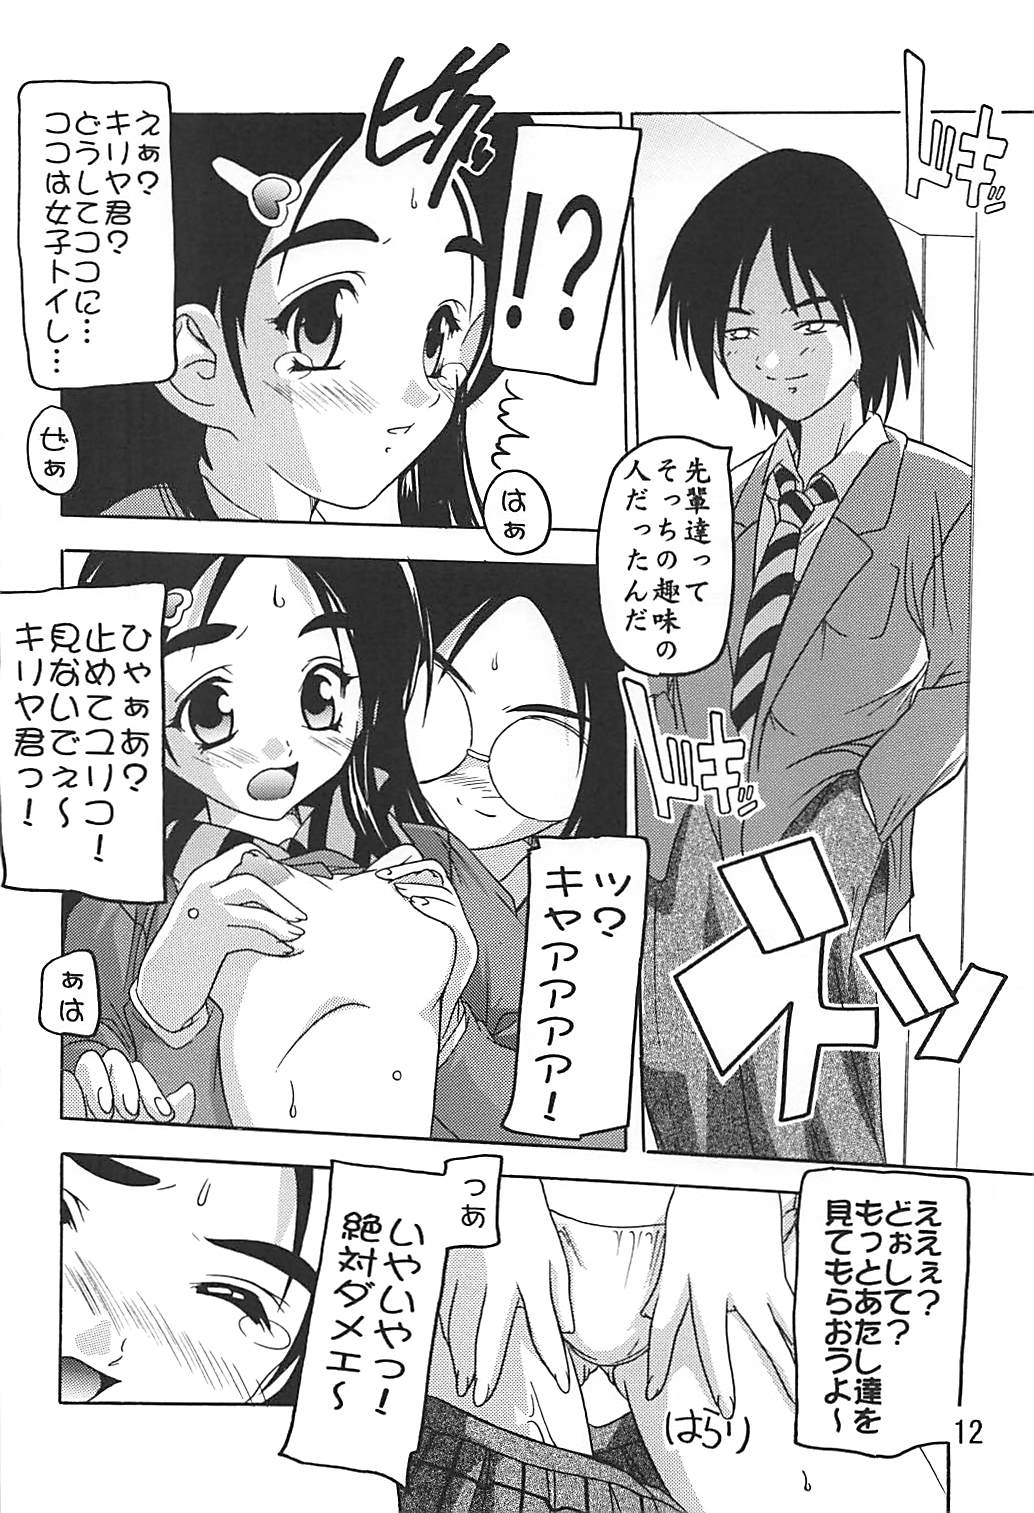 [Studio Q (Natsuka Q-ya)] PUNI CURE 2 (Futari wa Precure) [Digital] page 11 full